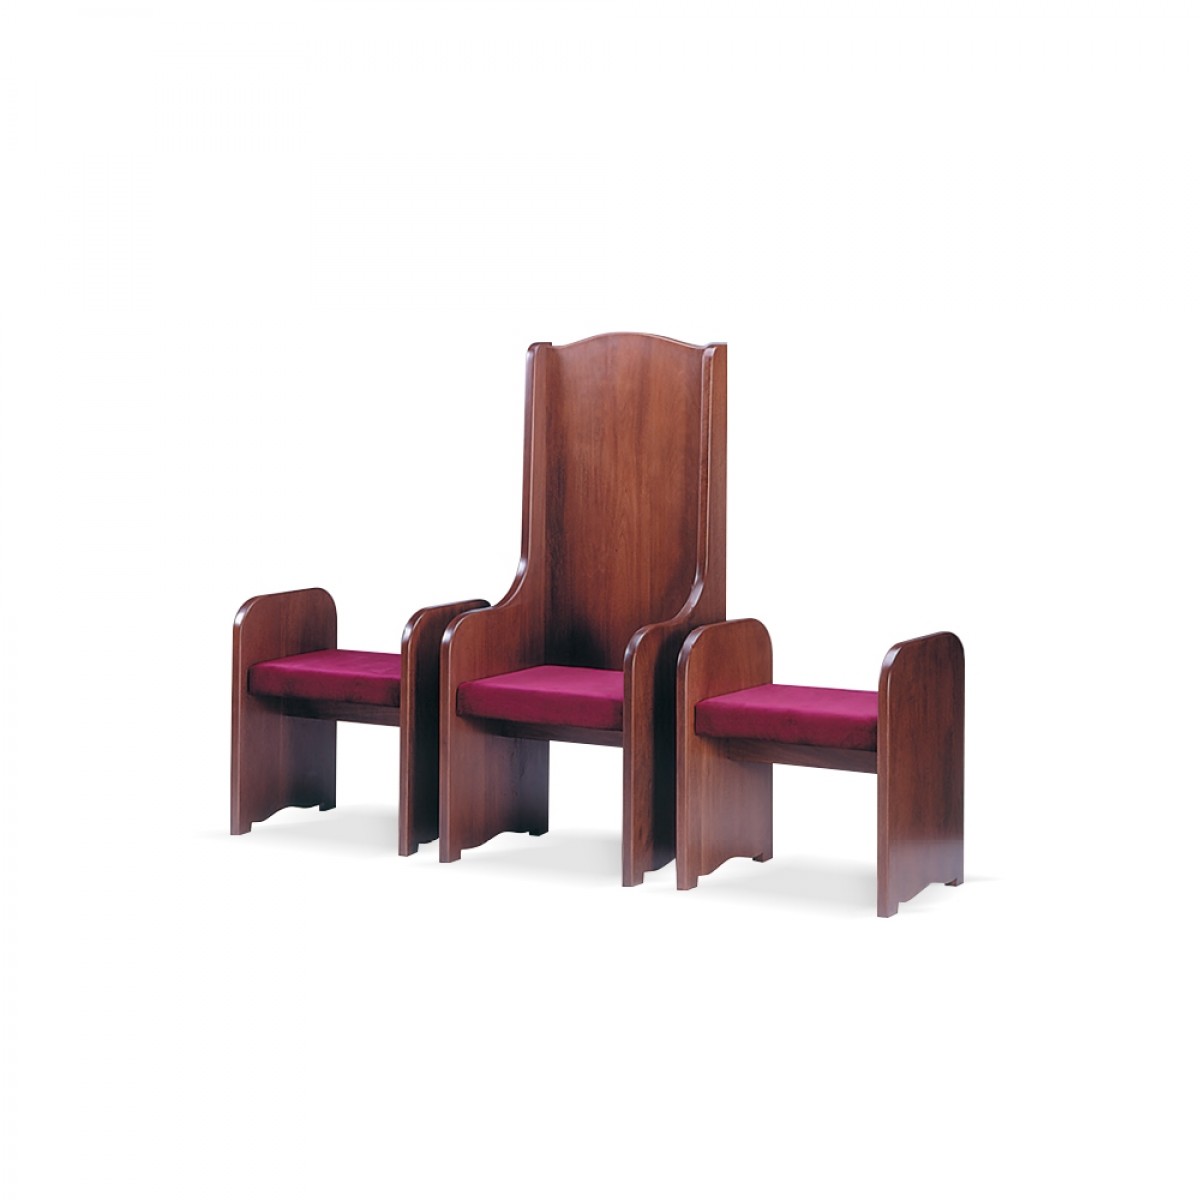 Completo sedia e due sgabelli - art. 160/1